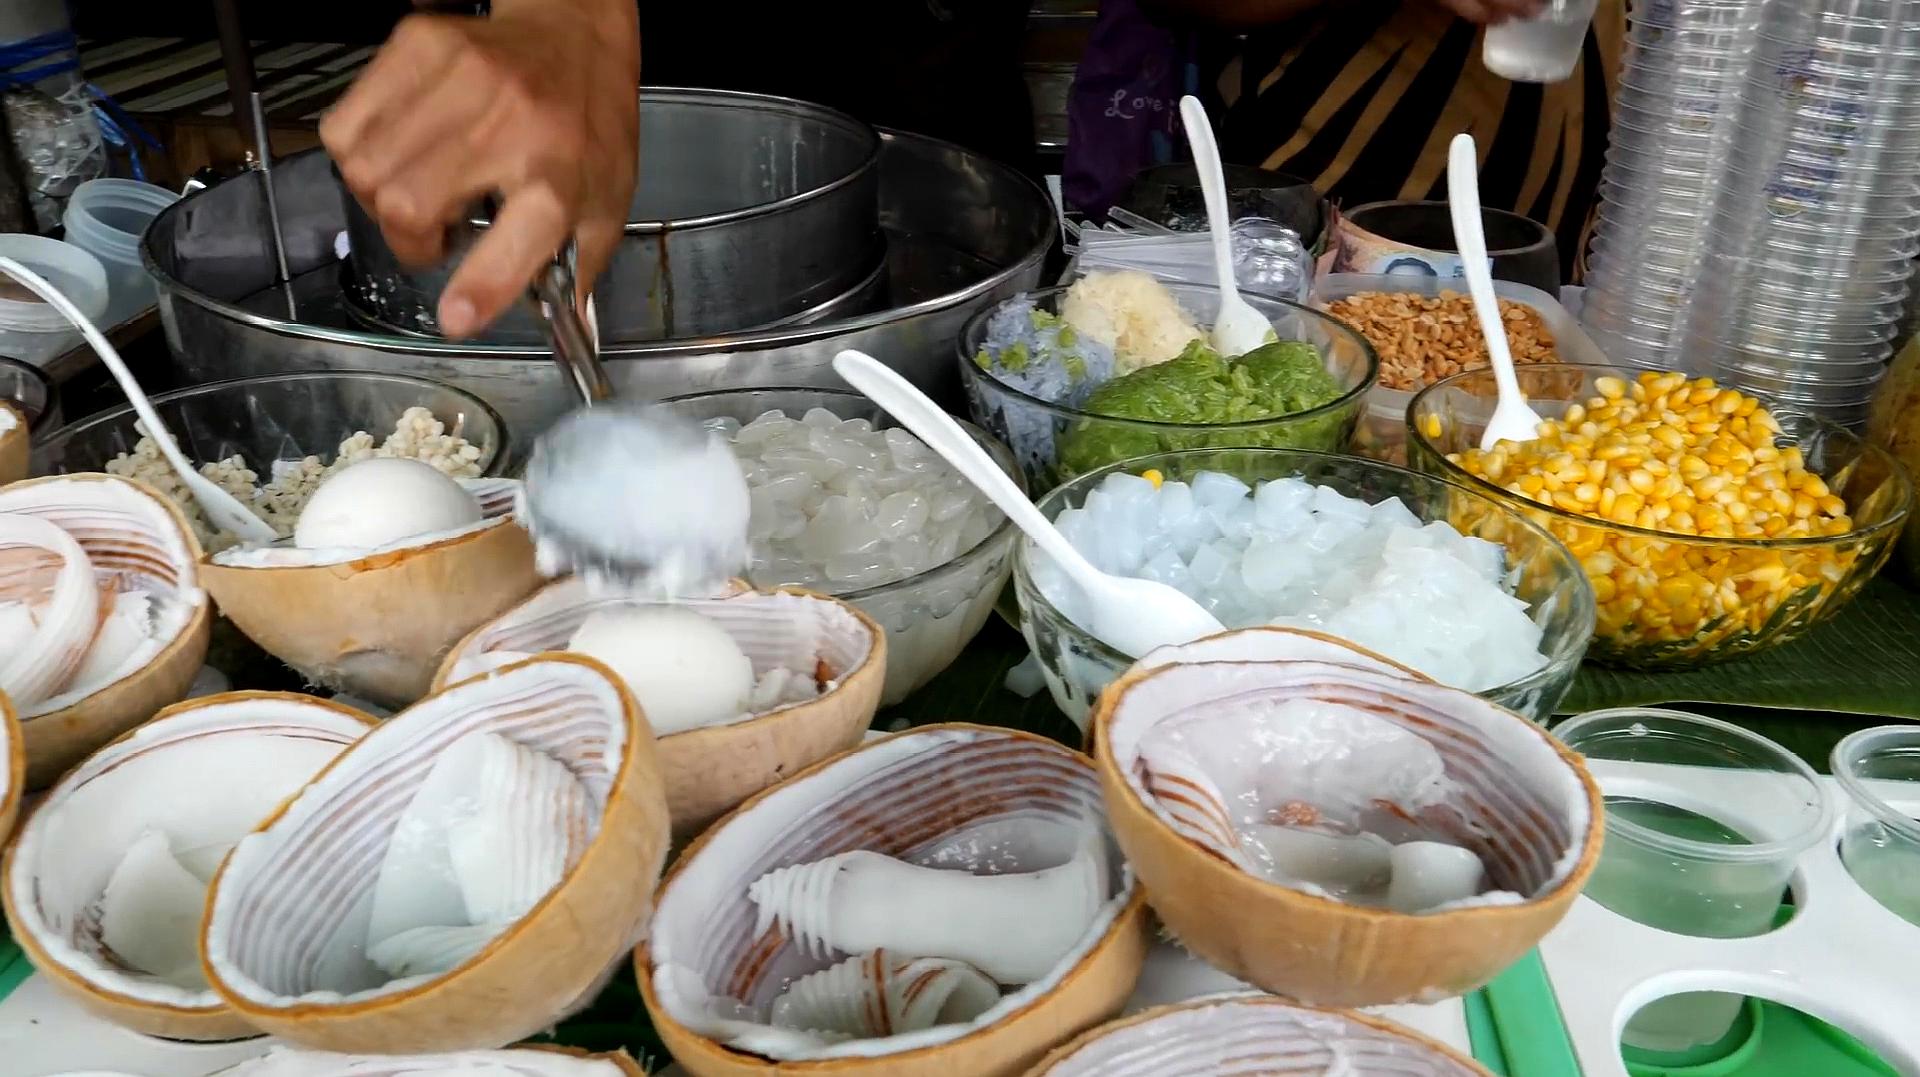 泰国街头的爆款小吃:椰子冰淇淋!凉爽冰淇淋混着q弹果肉超好吃